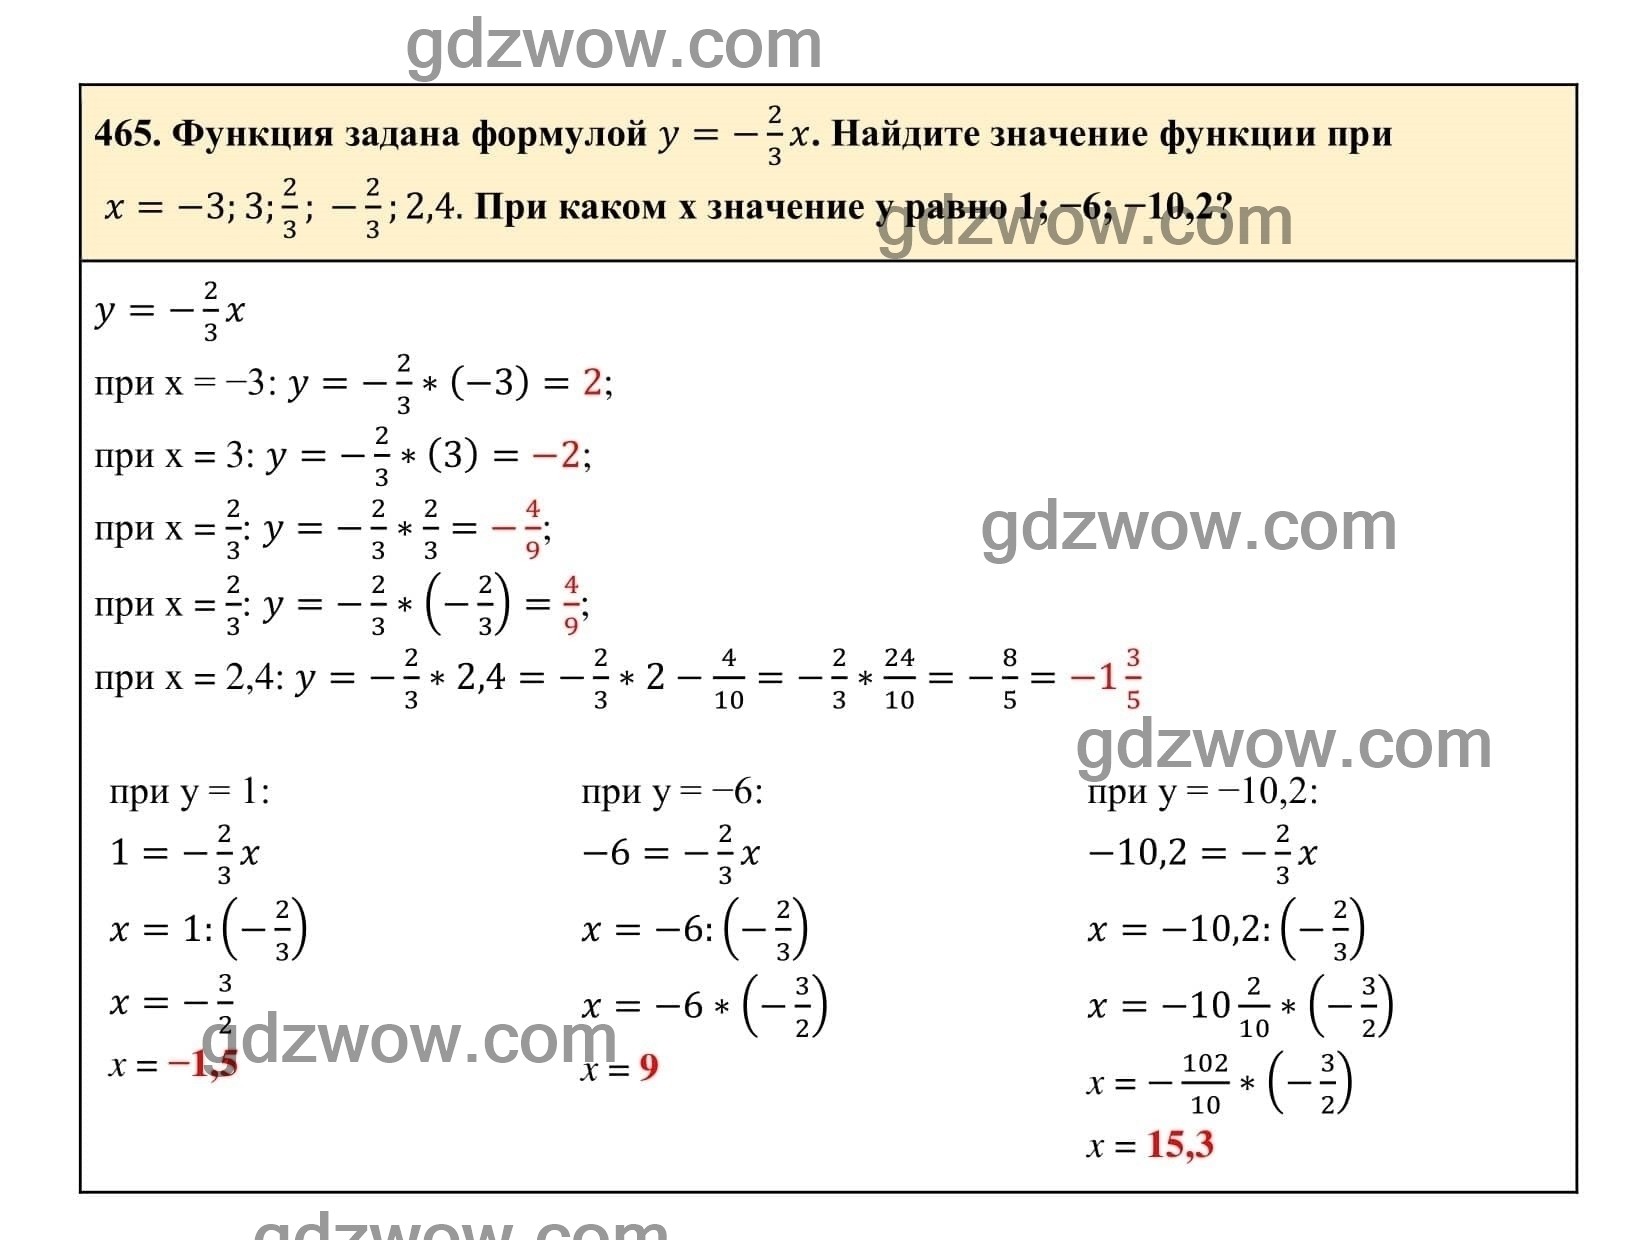 Упражнение 465 - ГДЗ по Алгебре 7 класс Учебник Макарычев (решебник) - GDZwow